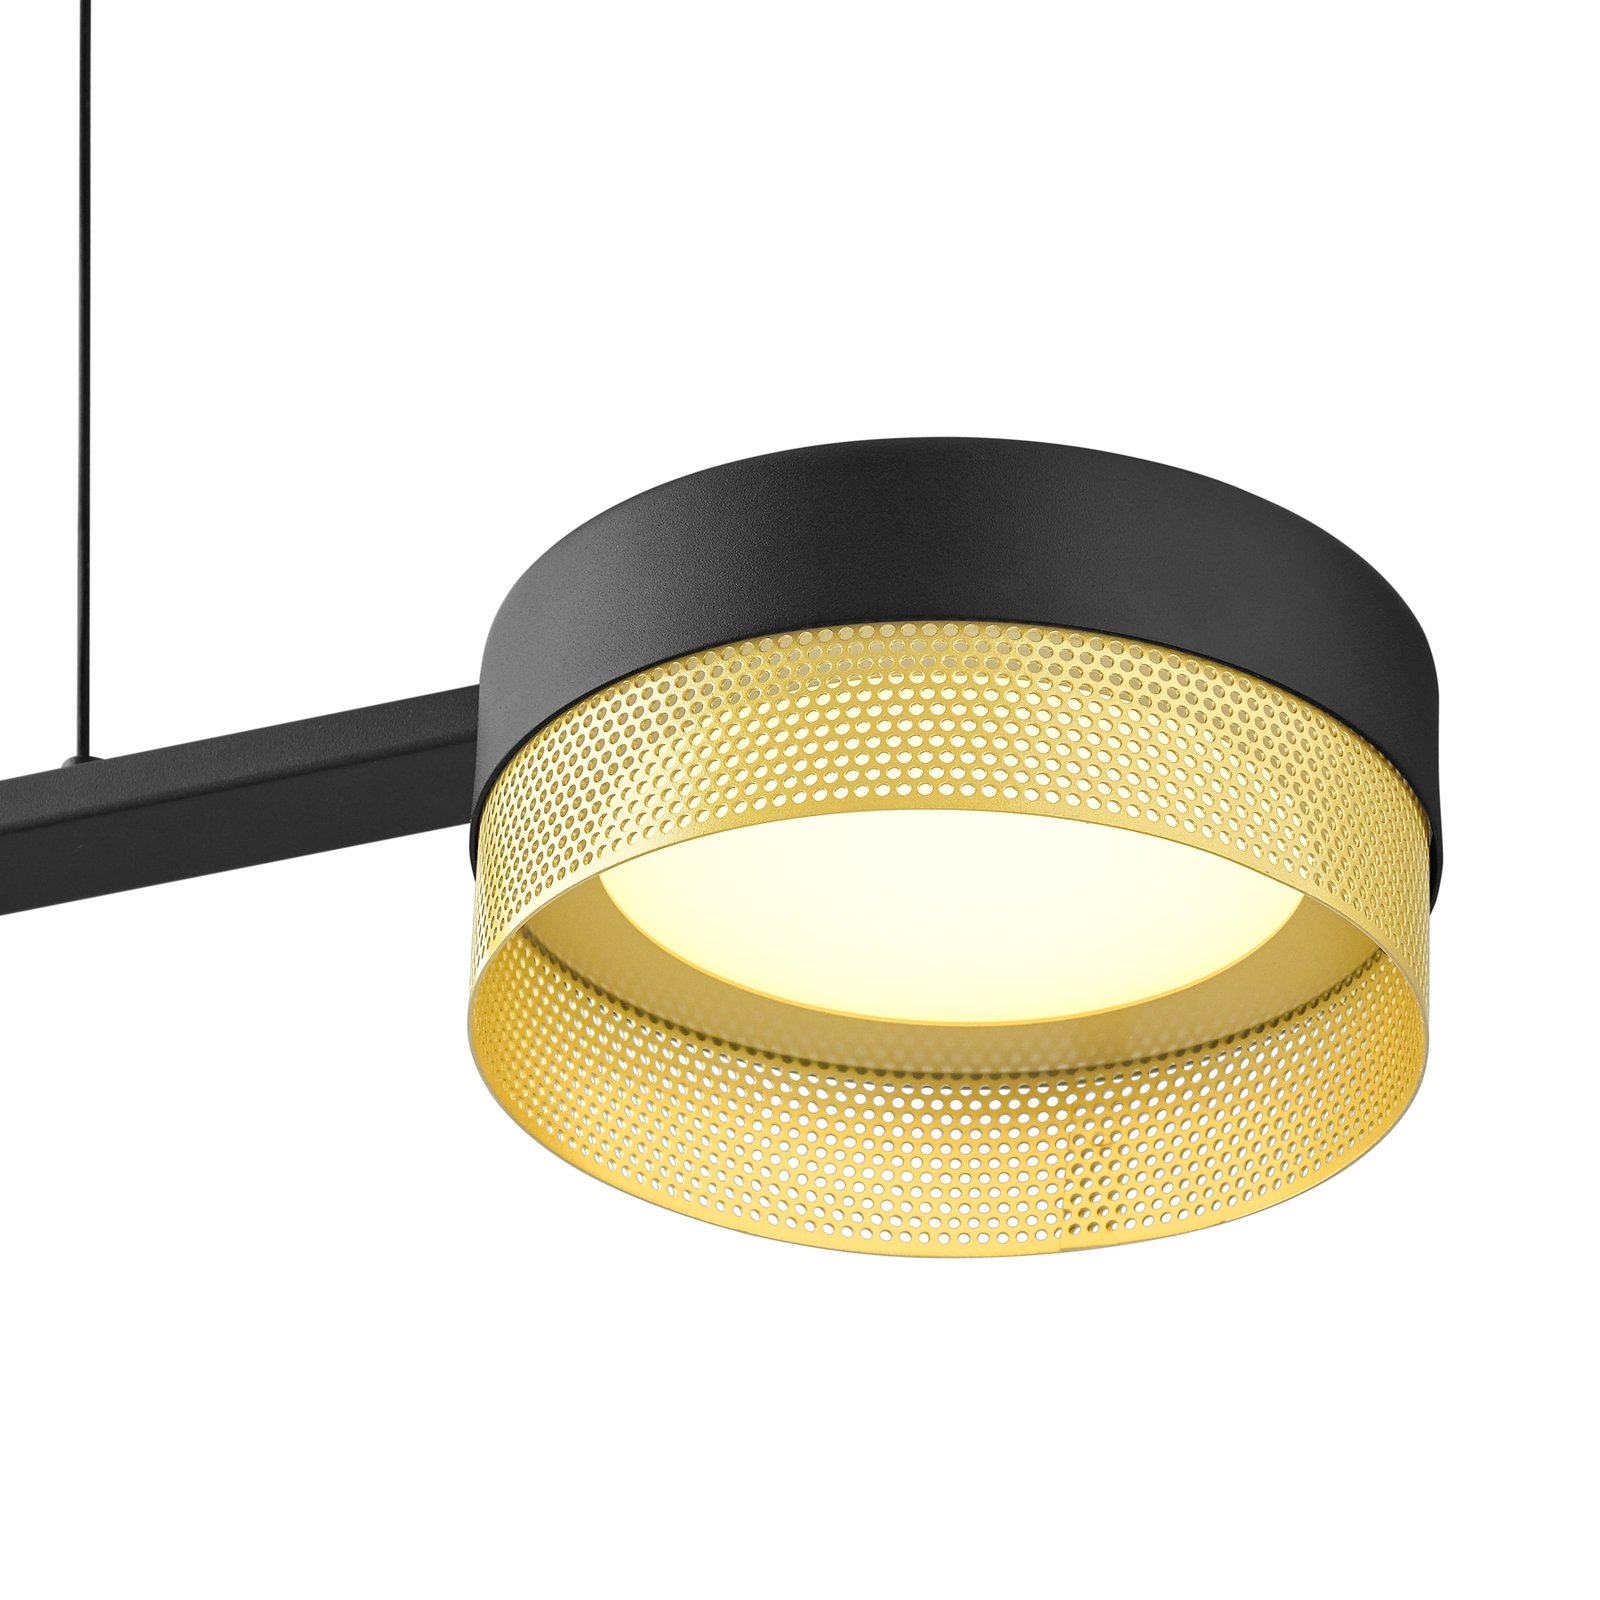 LED hanglamp Mesh 3-lamps dimmer, zwart/goud